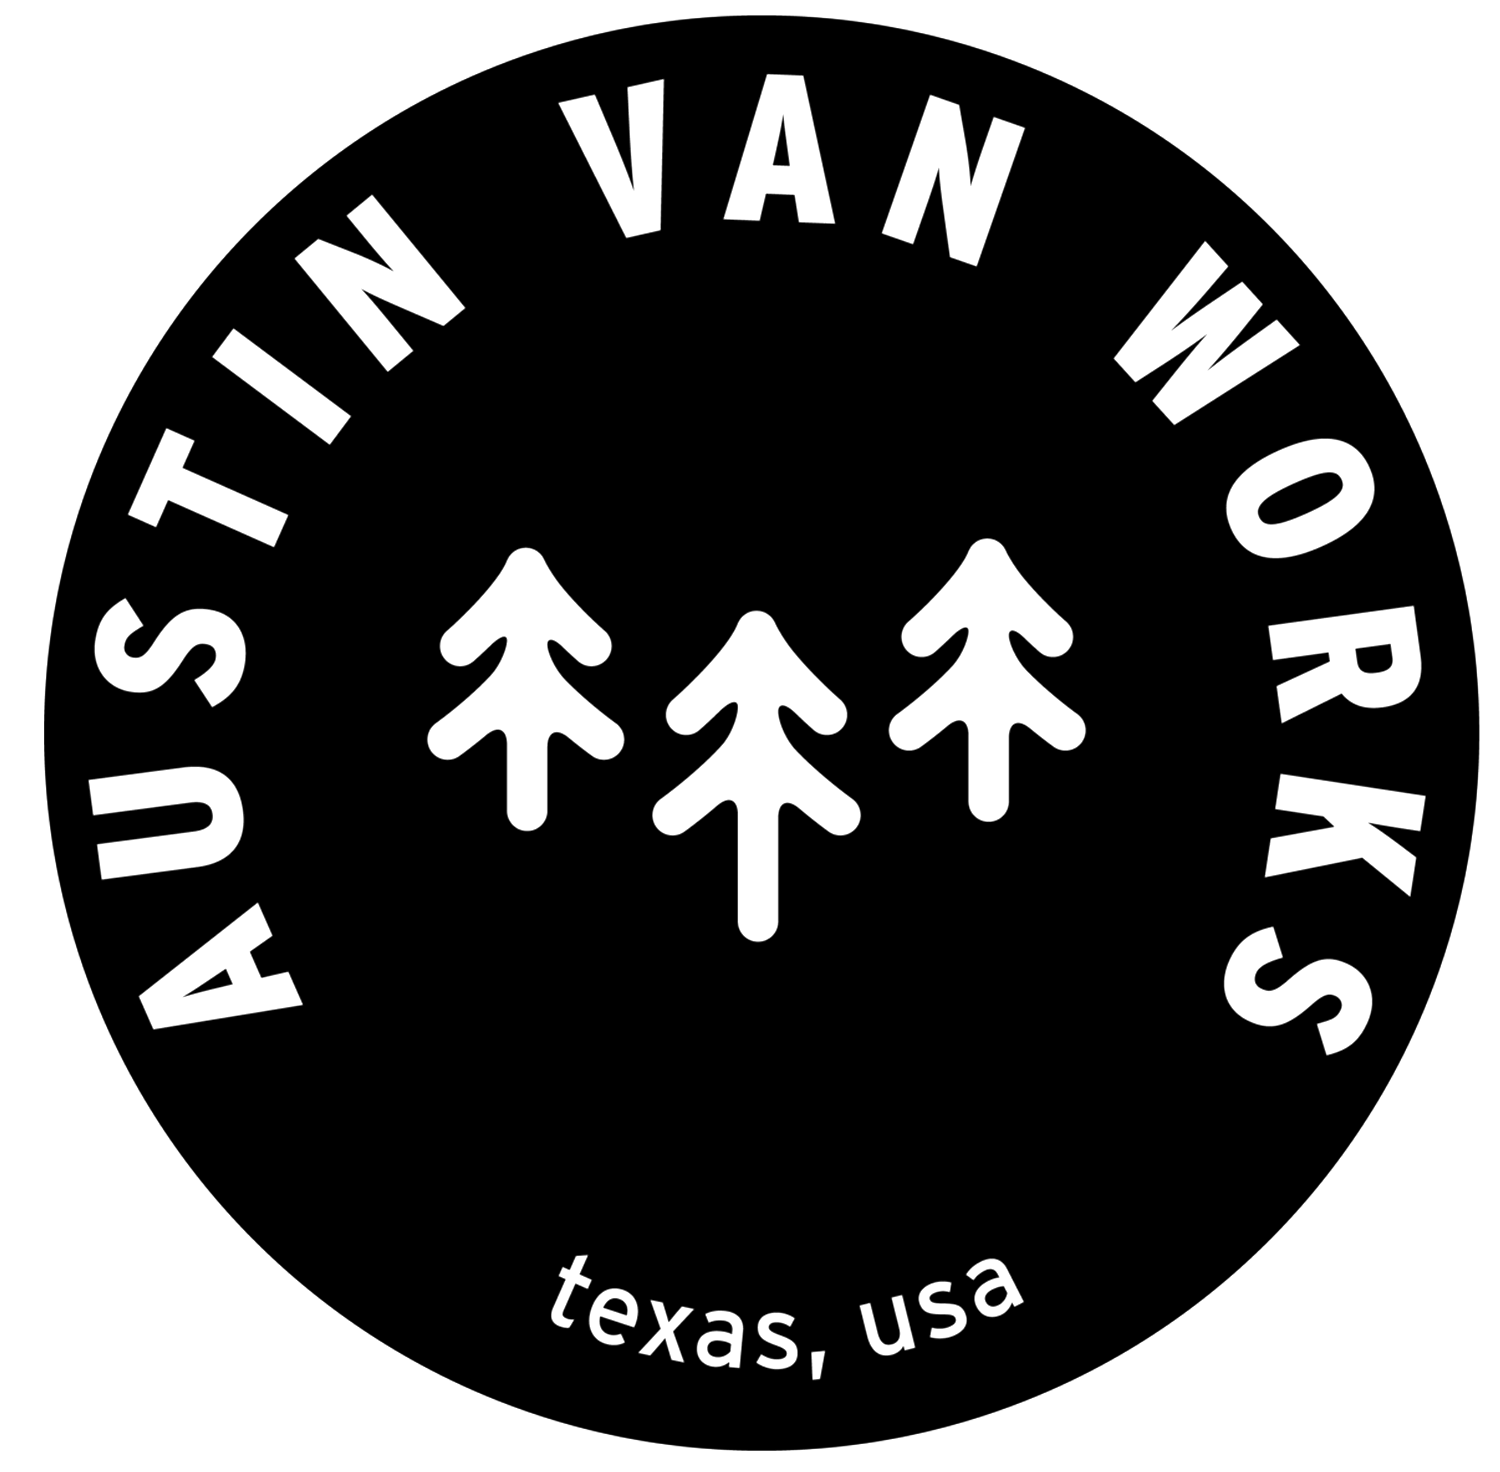 Austin Van Works